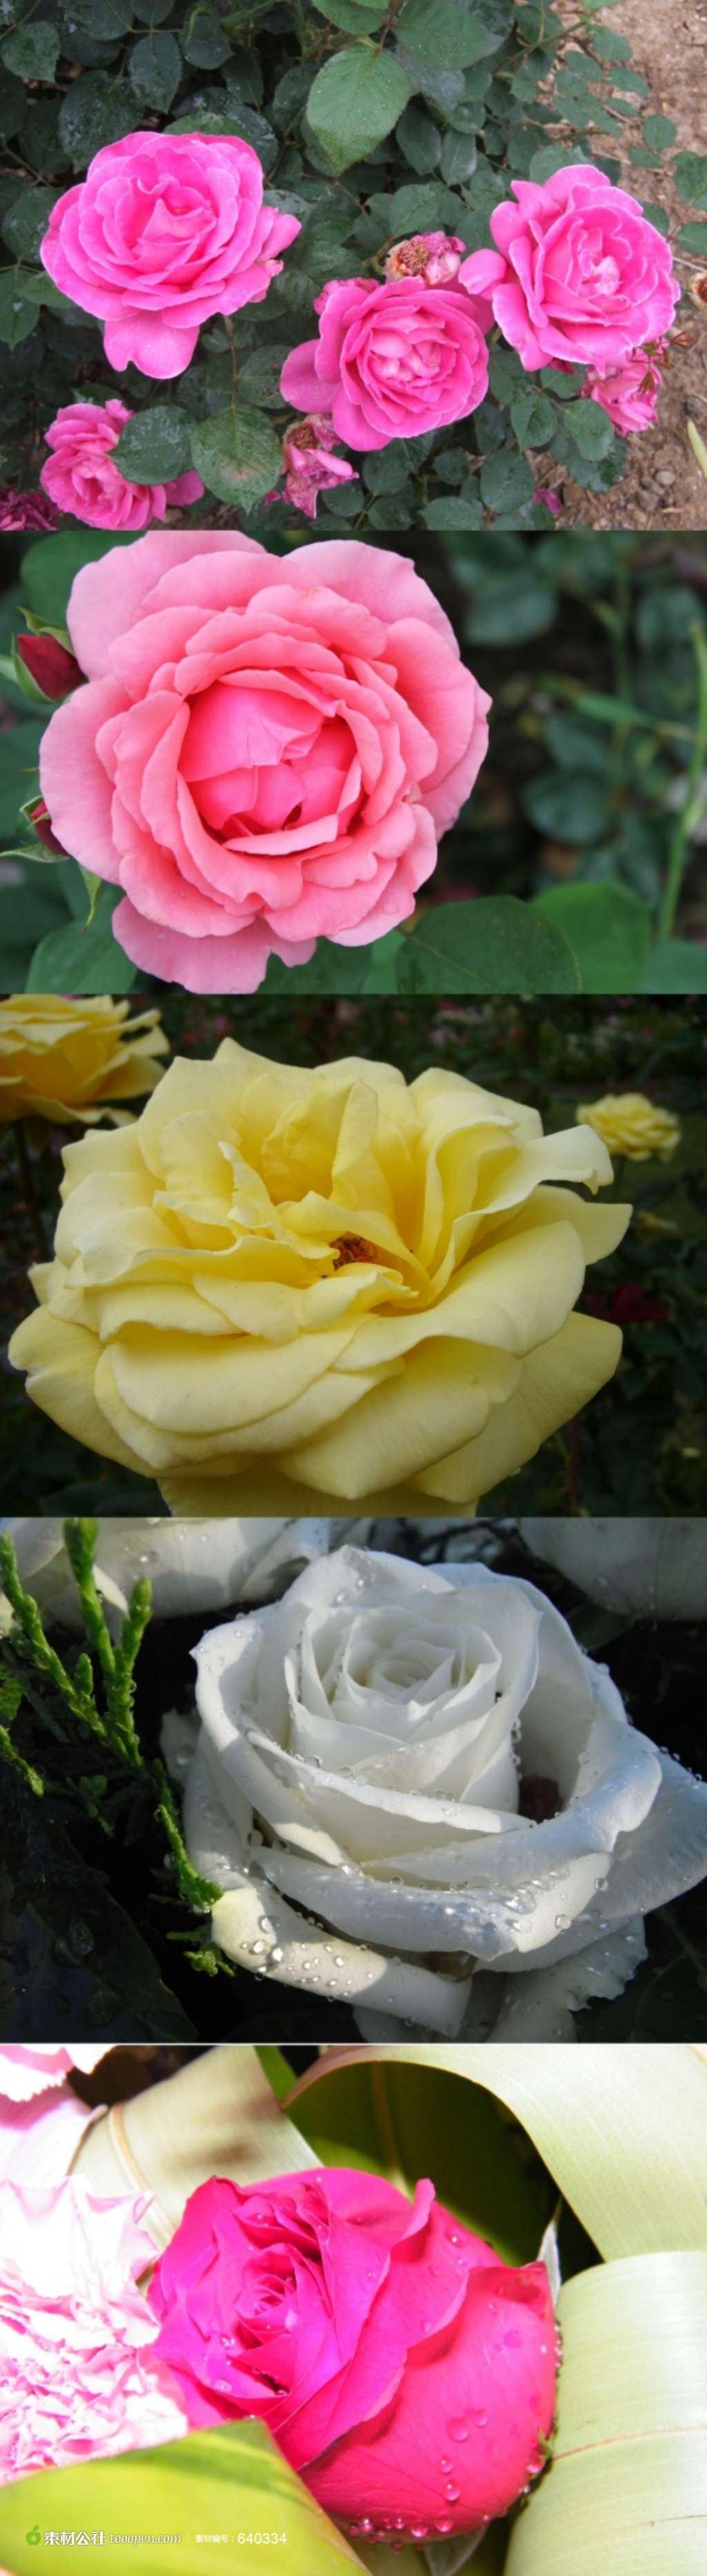 盛开的各色玫瑰花高清摄影图片